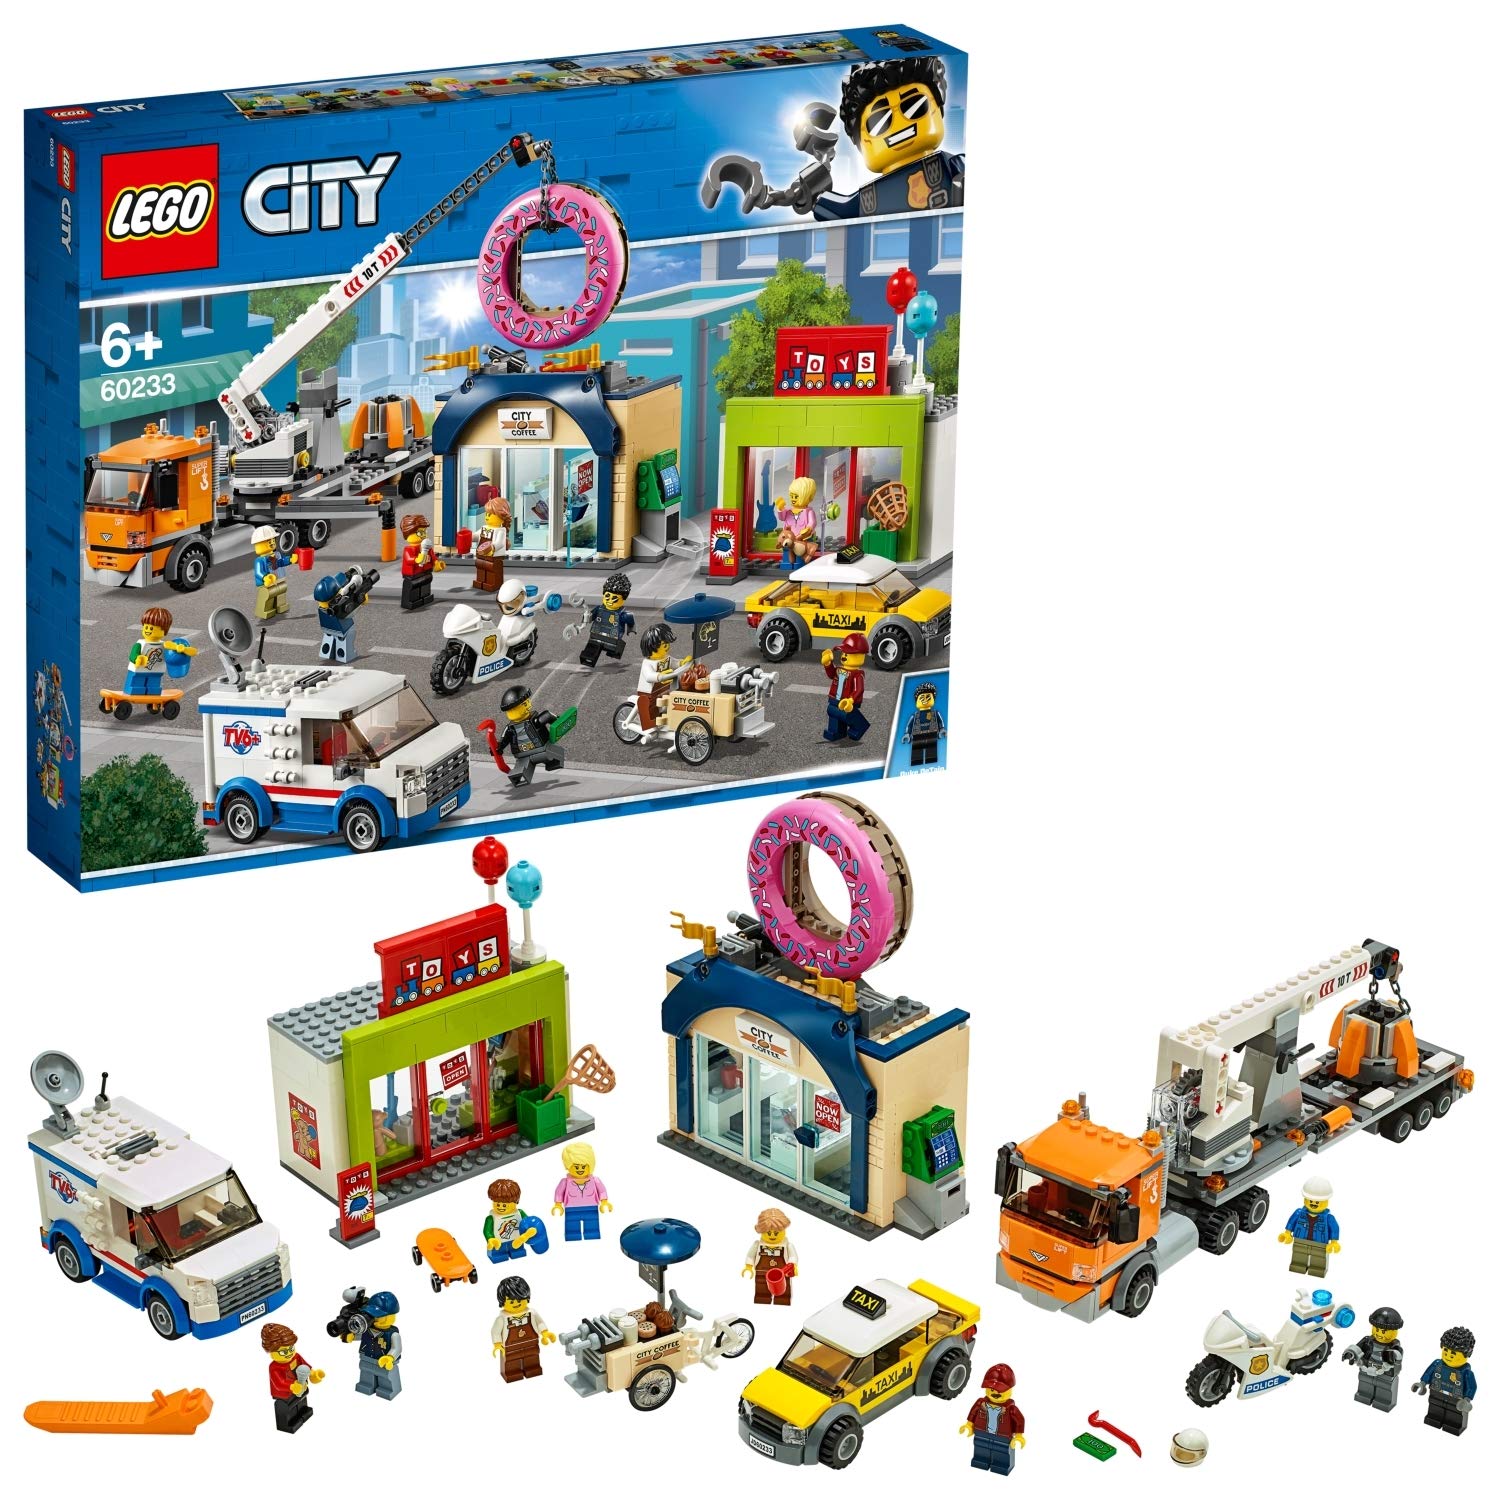 Lego City 60233 - Large Donut Shop Opening